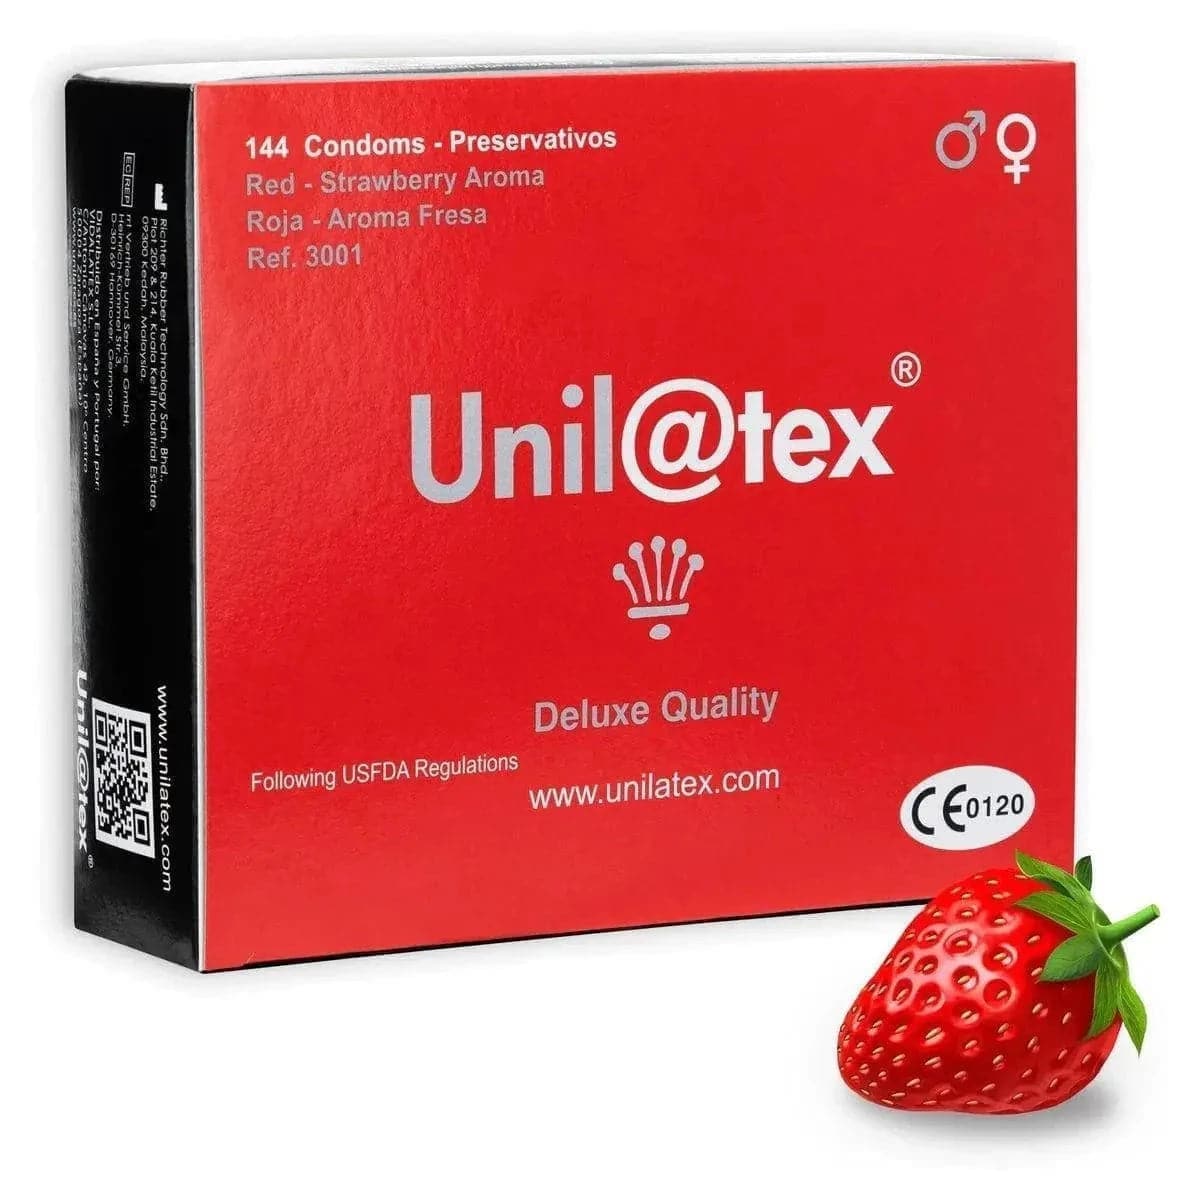 Preservativos Unilatex de Morango- Saborosa Proteção Íntima  Unilatex   